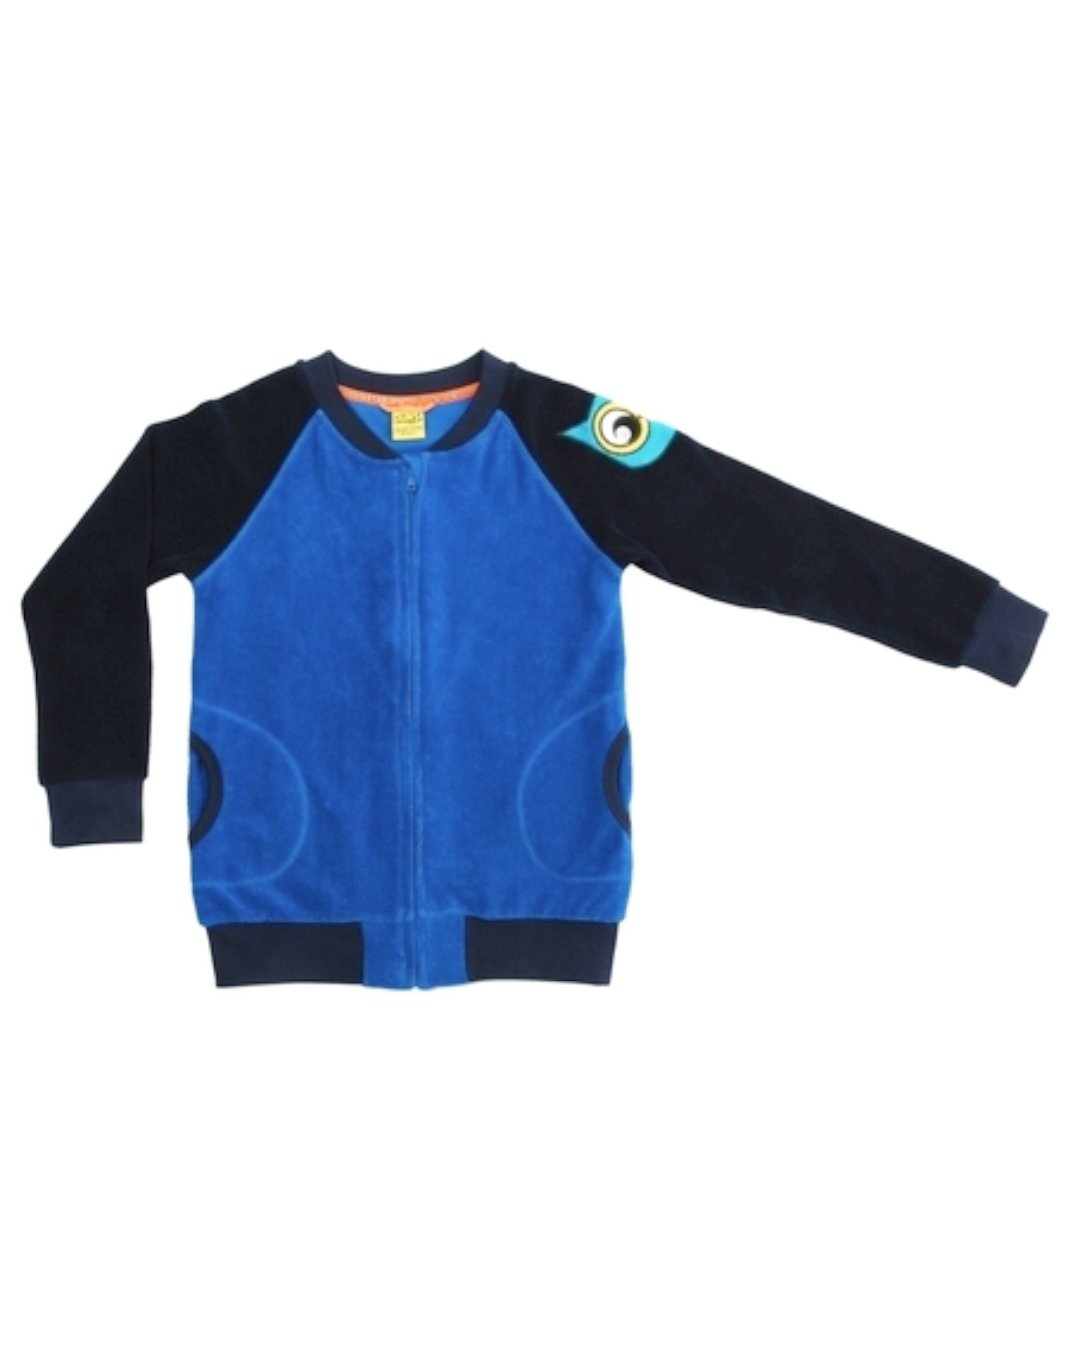 Blaue Frottee Jacke mit Eule aus Biobaumwolle von DUNS Sweden